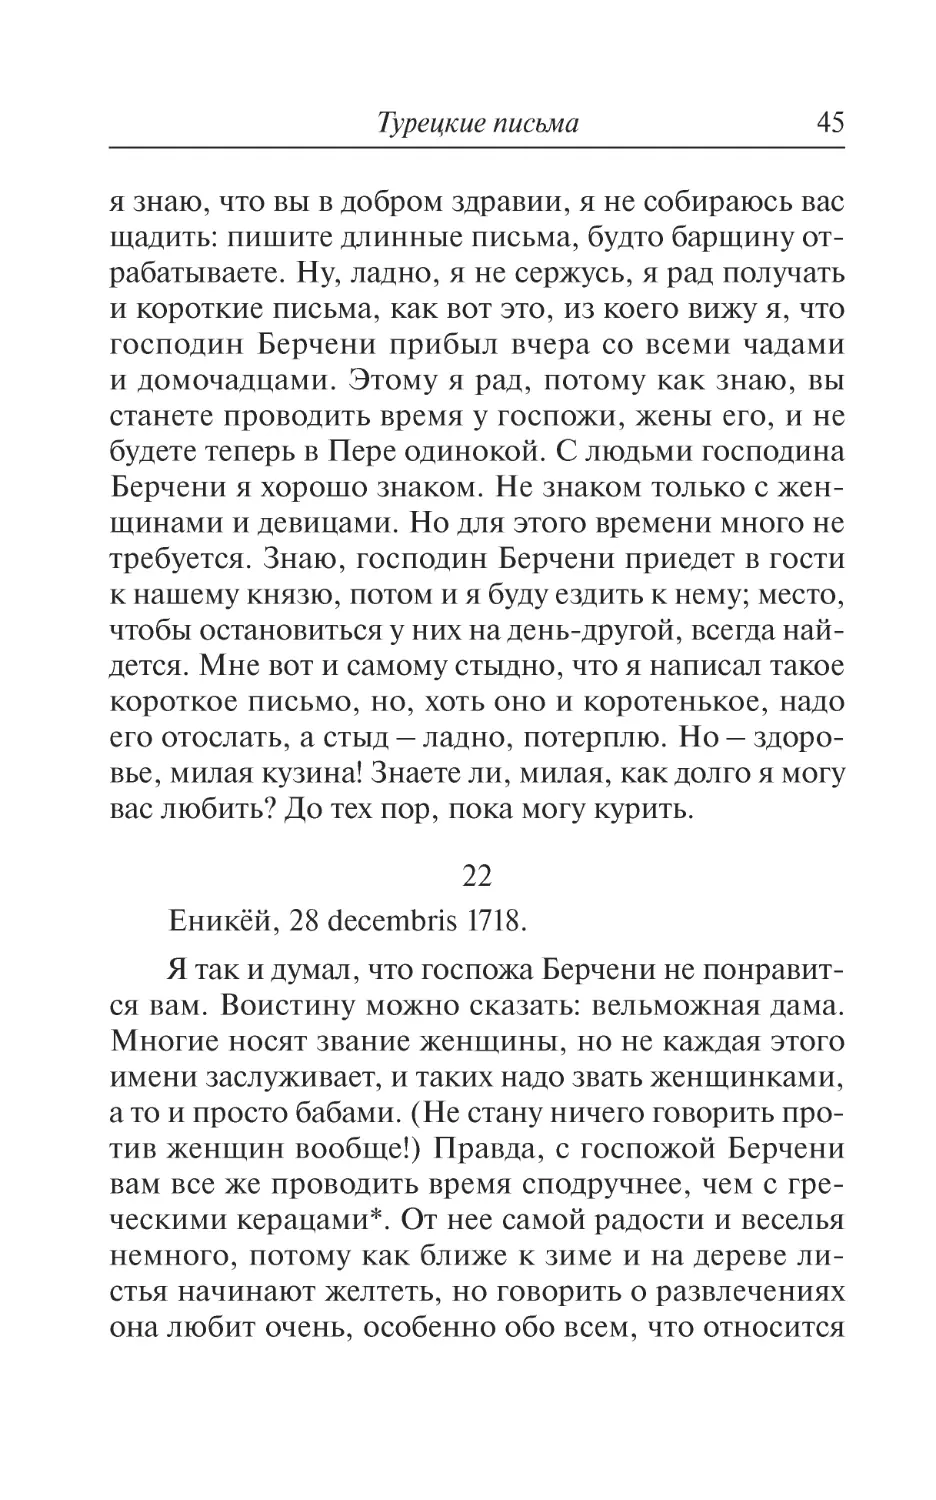 22. Еникёй, 28 decembris 1718